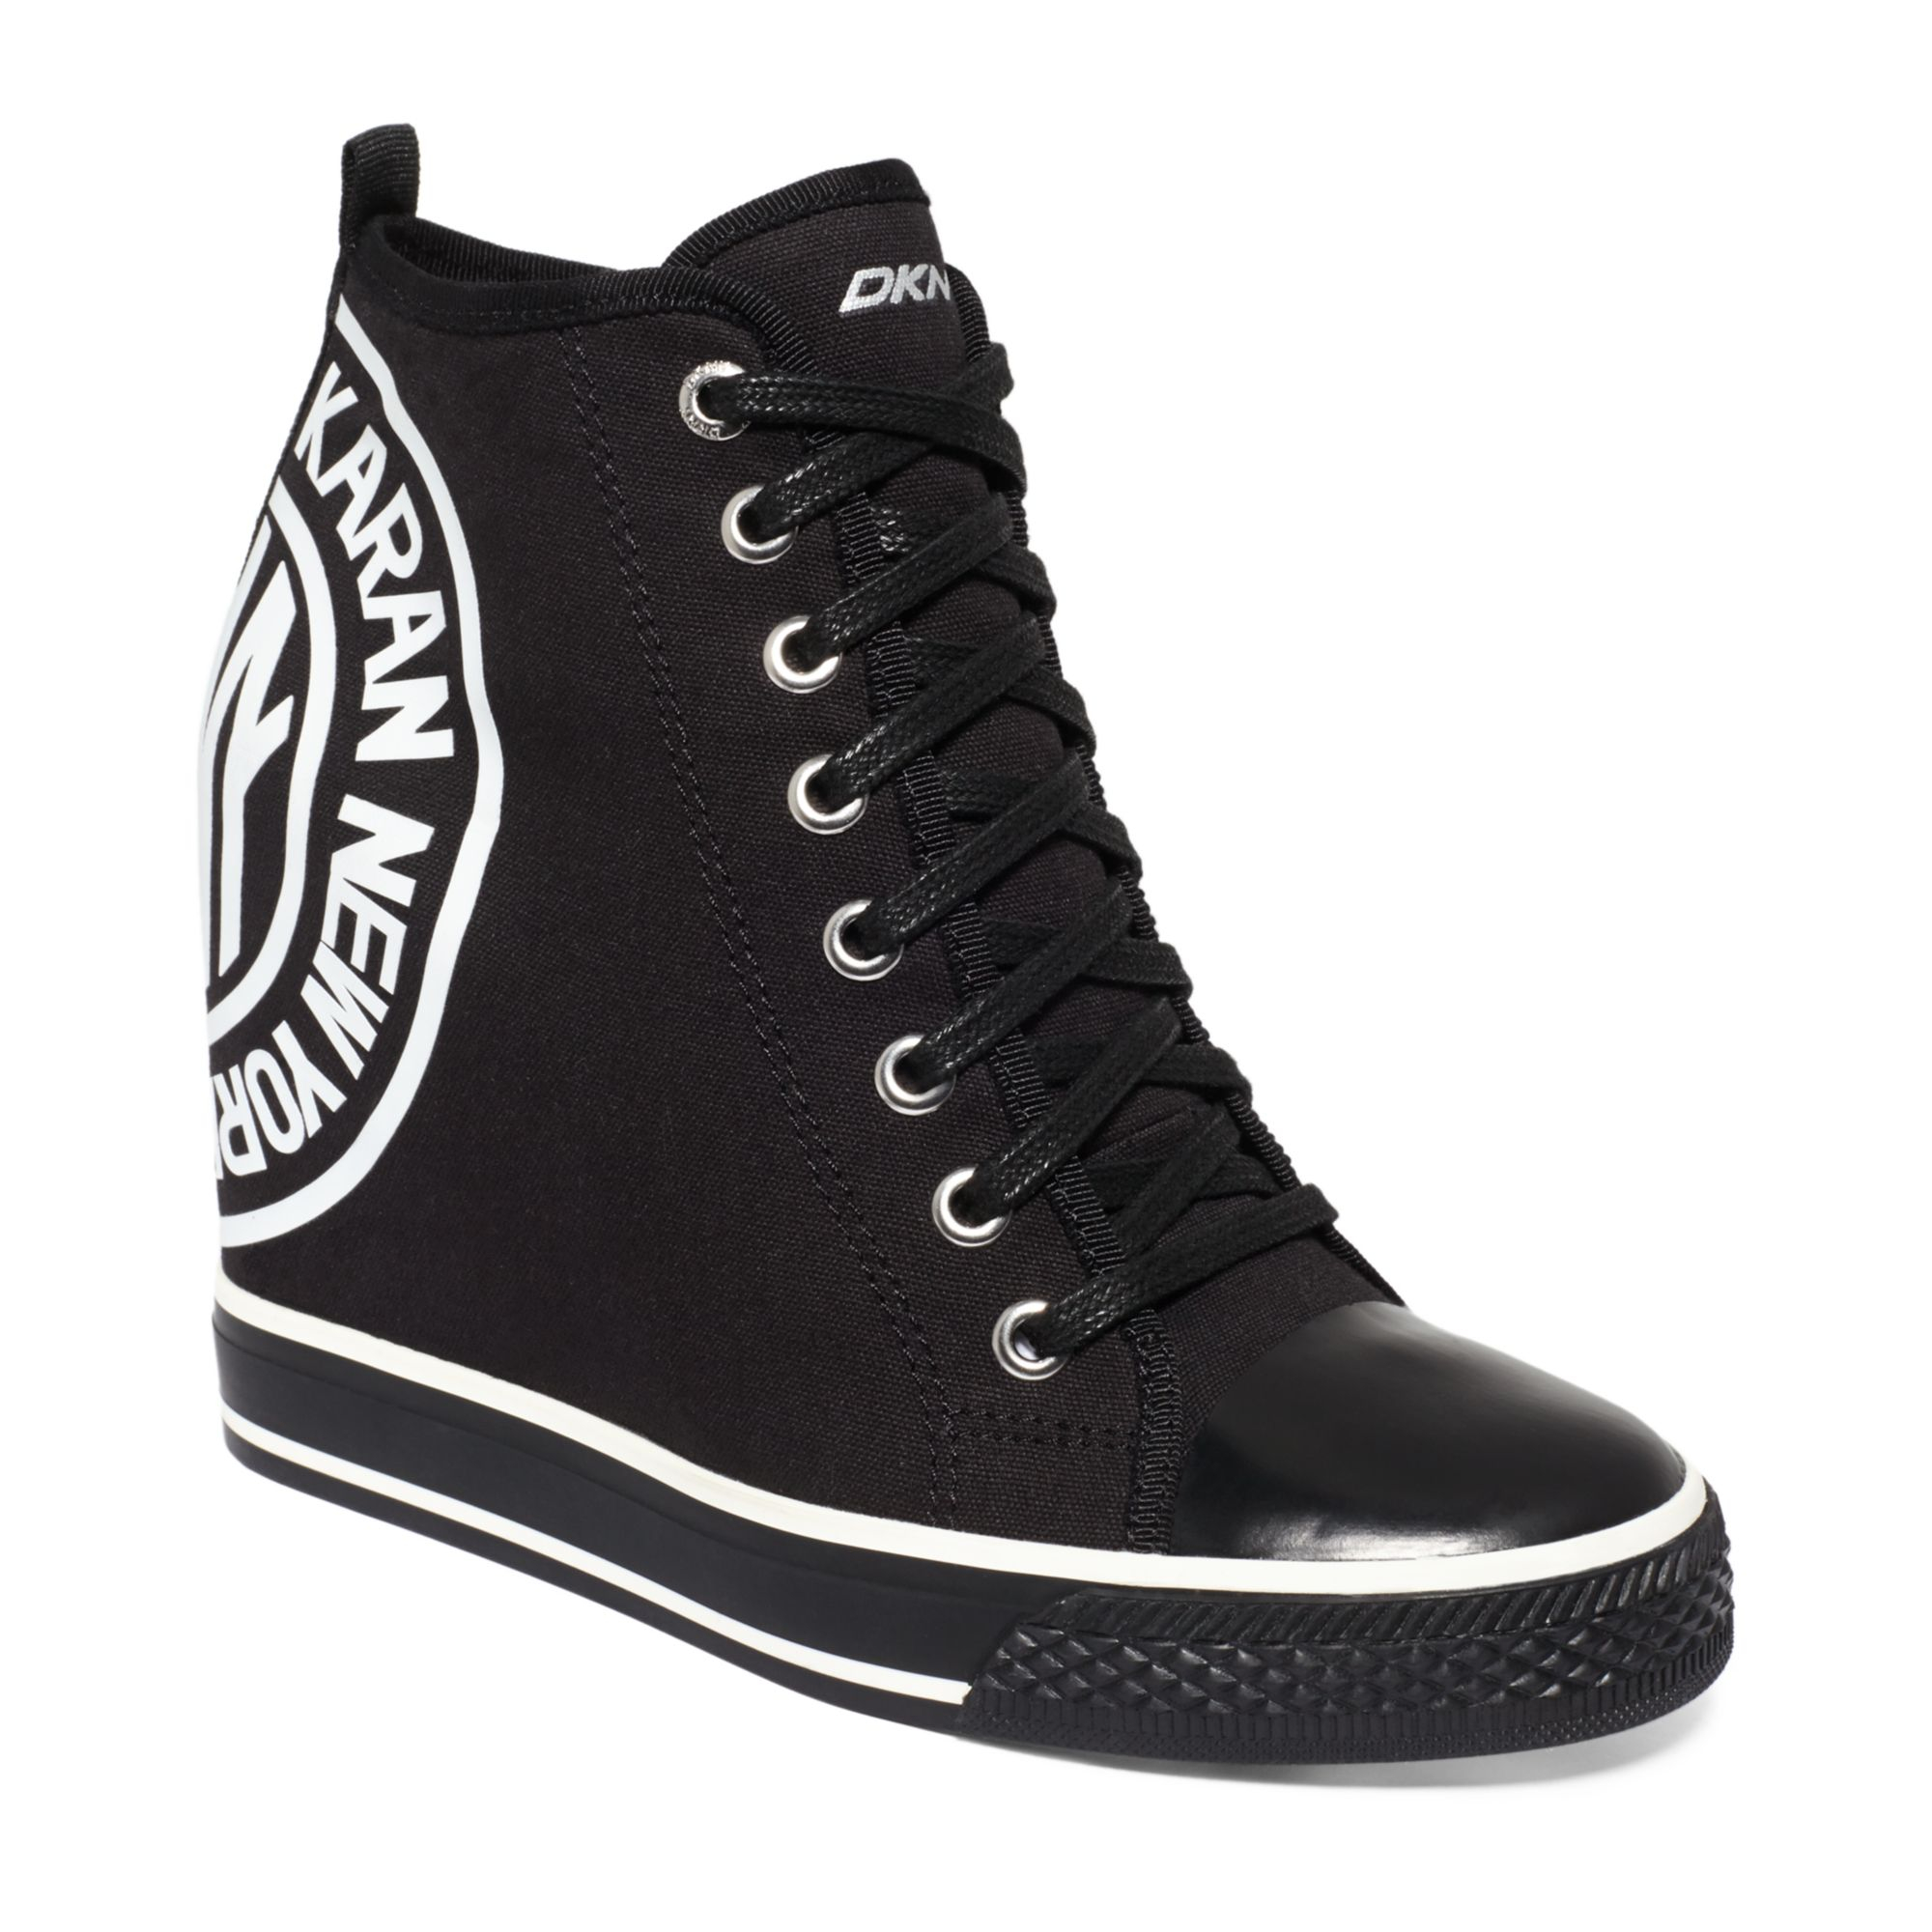 DKNY Grommet Wedge Sneakers in Black - Lyst